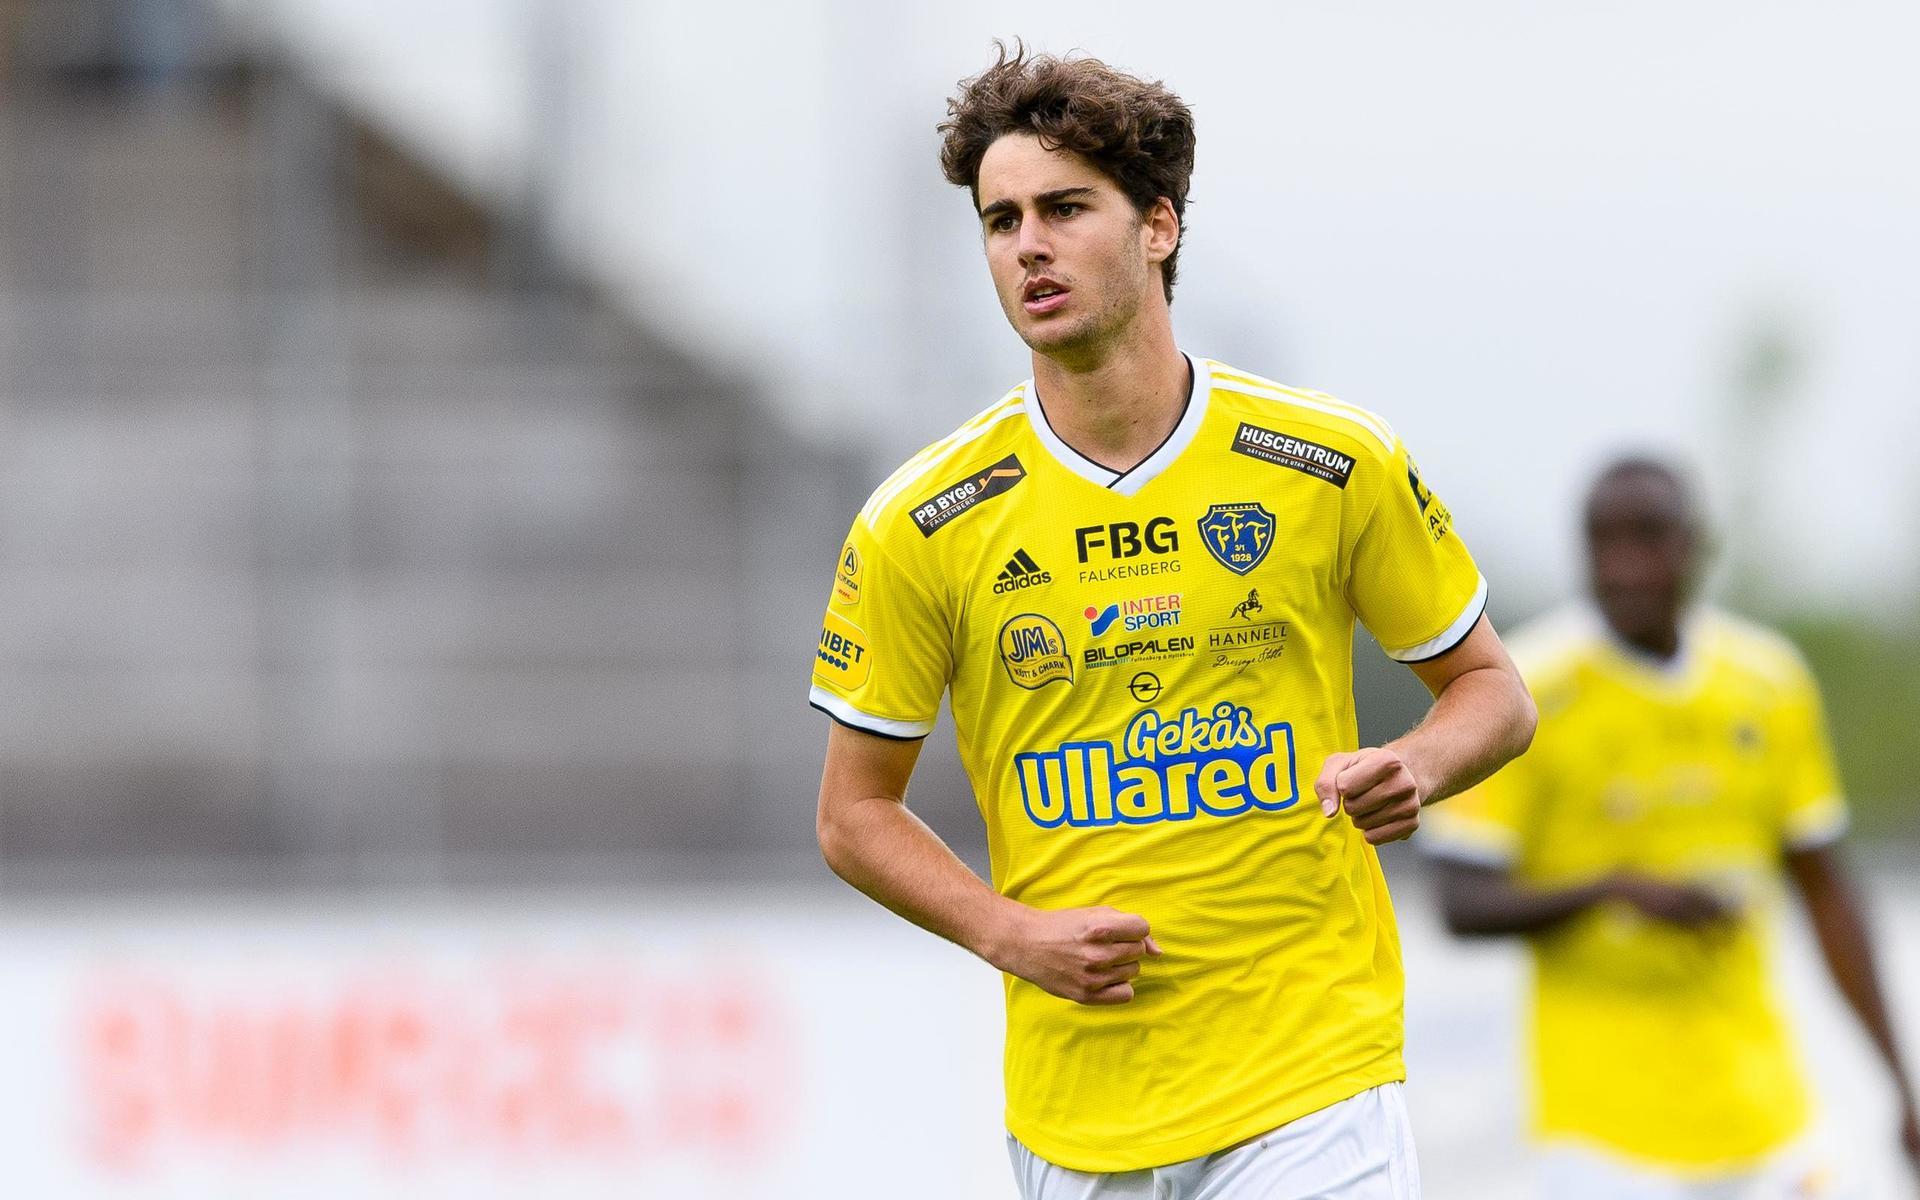 Matthew Garbett fick 27 minuter mot Kalmar och 26 minuter mot Mjällby i Svenska cupen. Uppställningen på lördagens träning talar för att han gör sin första match från start.